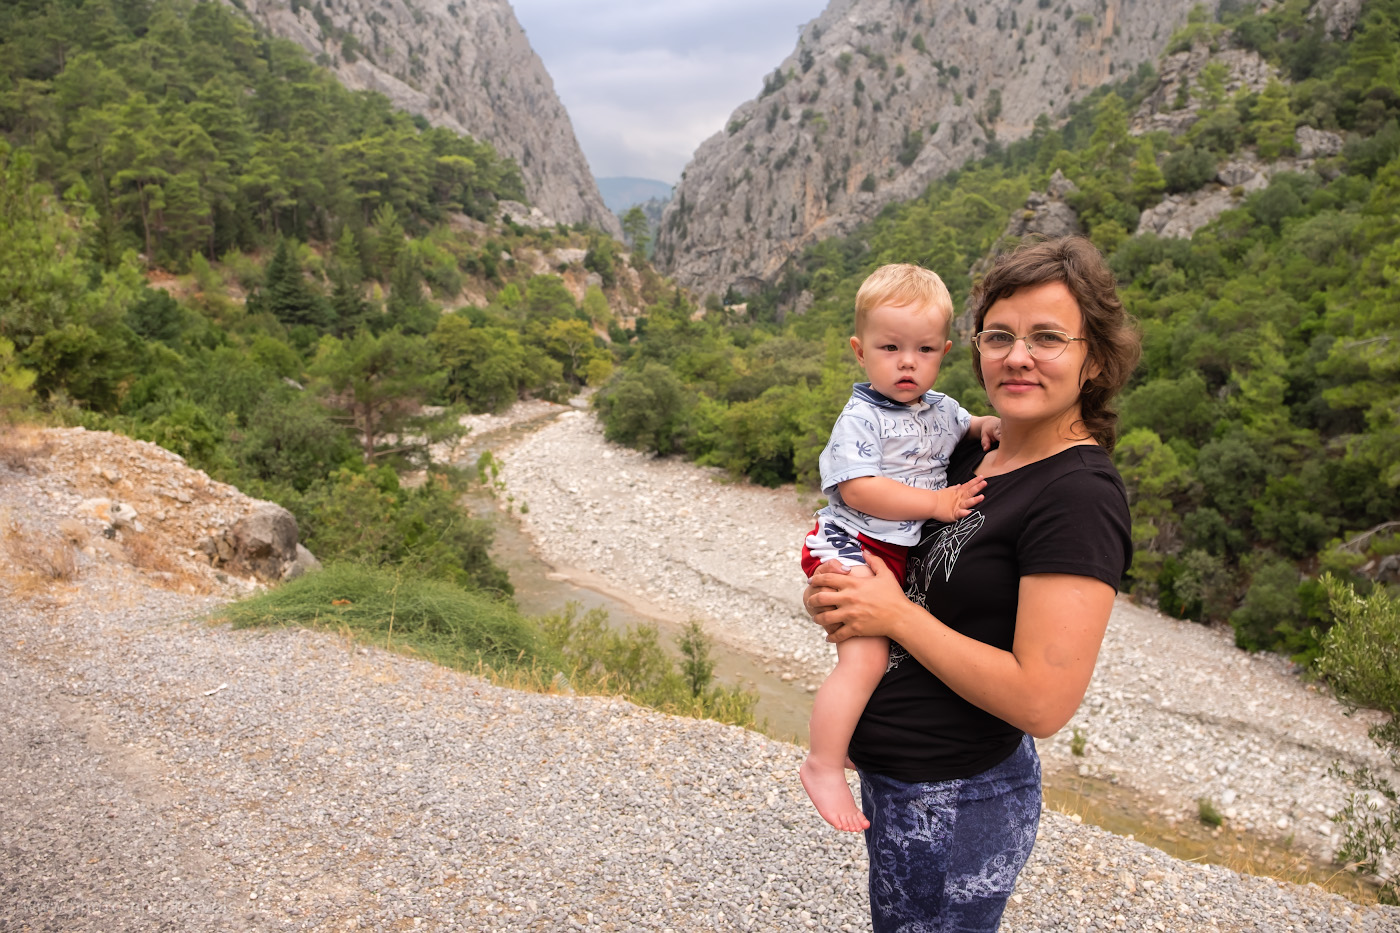 Фото 1. Ущелье реки Агва (Agva) – отличное место, чтобы увидеть горы Кемера. Отдых в Турции с ребенком. Снято на беззеркалку Fujifilm X-T10 с объективом Fujifilm 16-55mm f/2.8. Настройки: В=1/400 сек., f/3.2, ISO 200, поправка экспозиции -0.33 EV, ФР=16 мм.